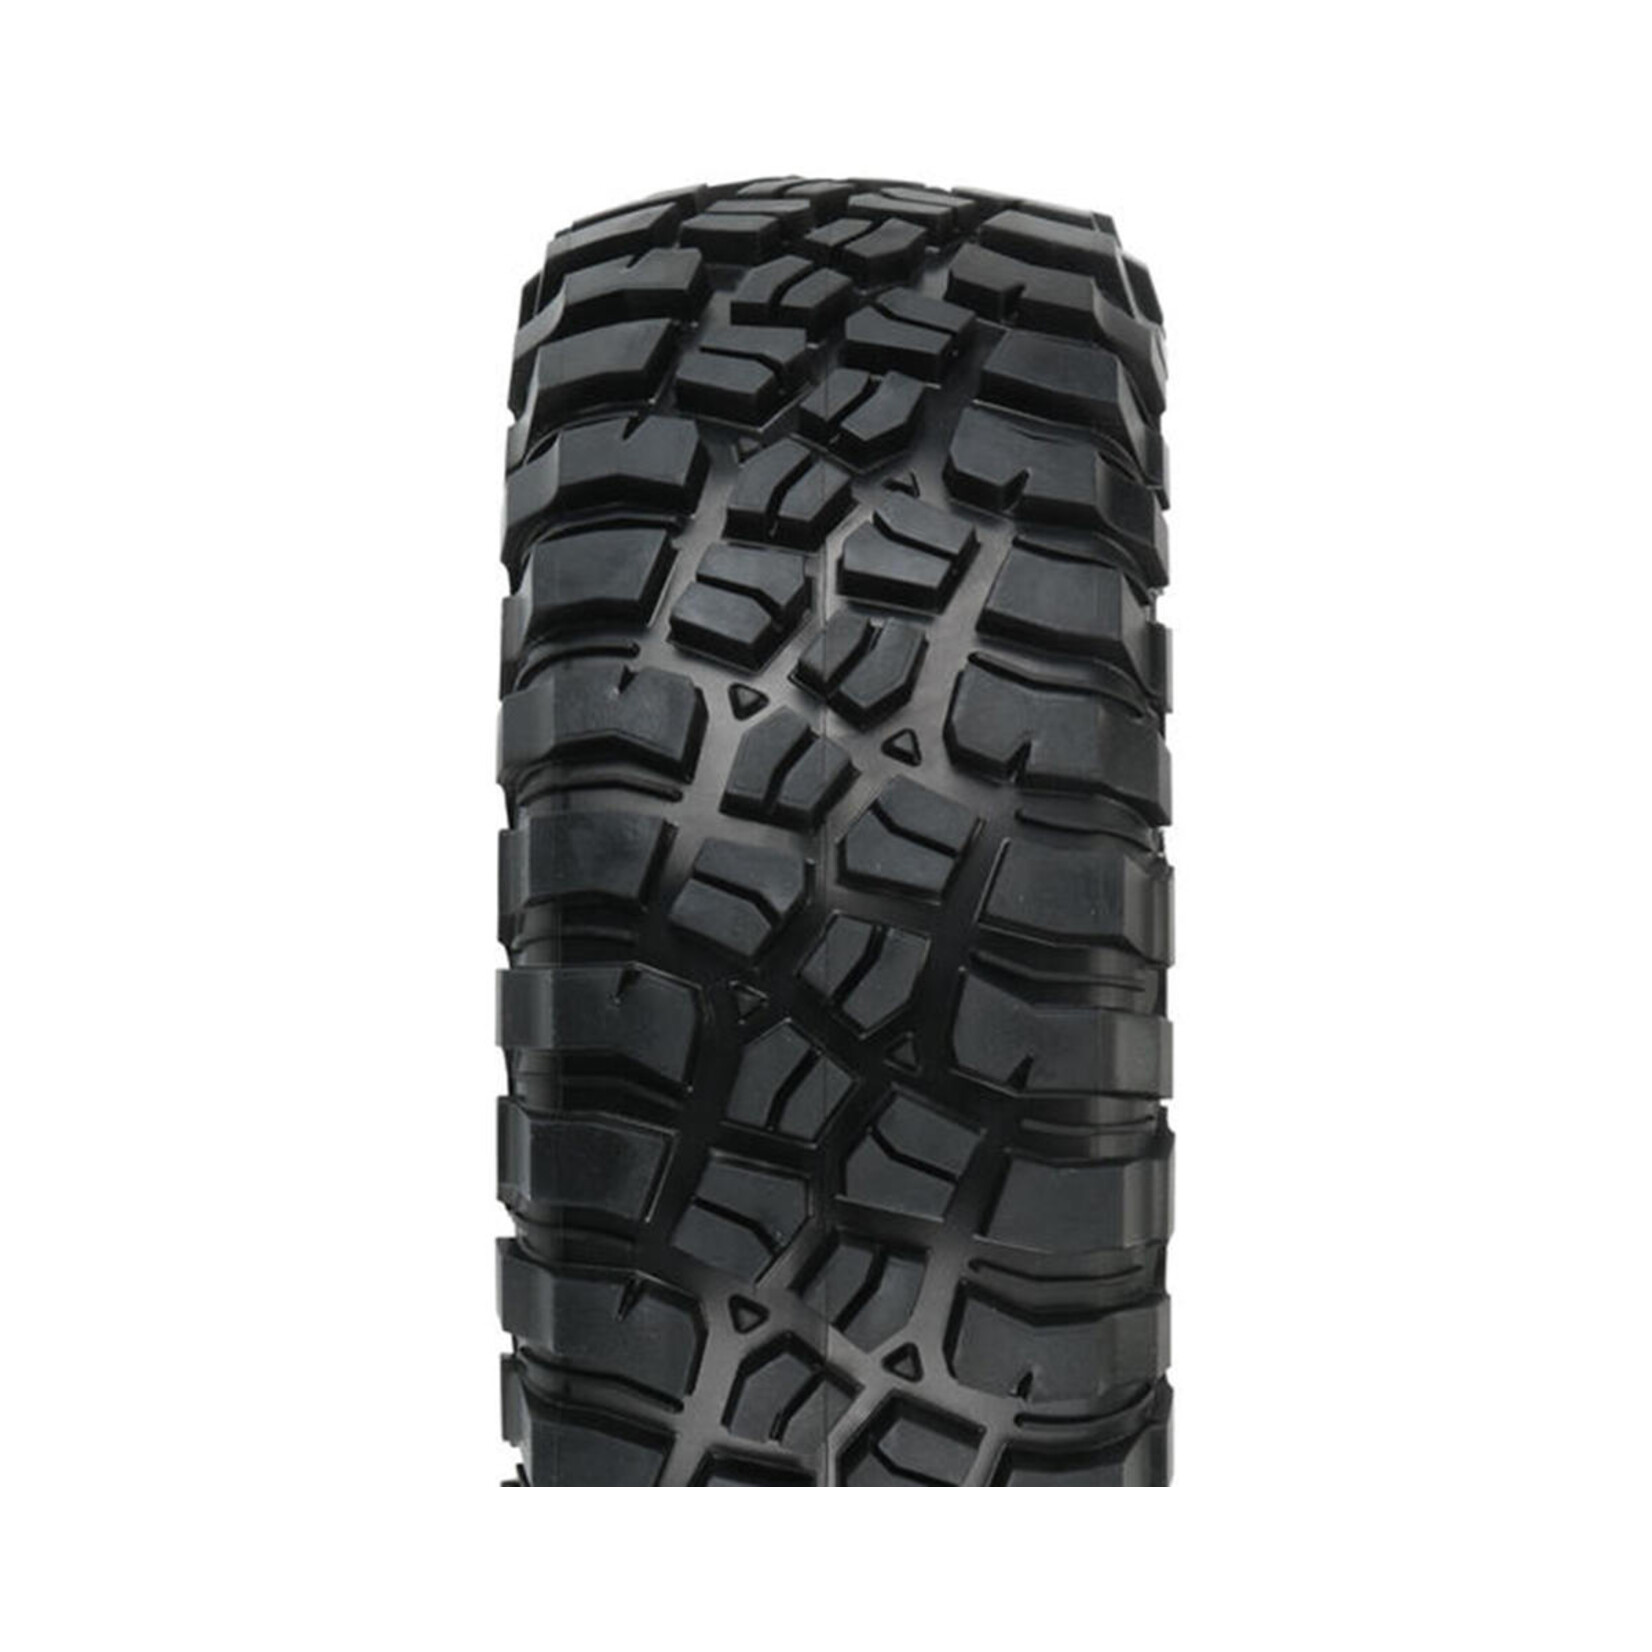 Pro-Line Pro-Line BFGoodrich Mud-Terrain T/A KM3 1.9" Rock Crawler Tires (G8) w/Memory Foam (2) #10150-14